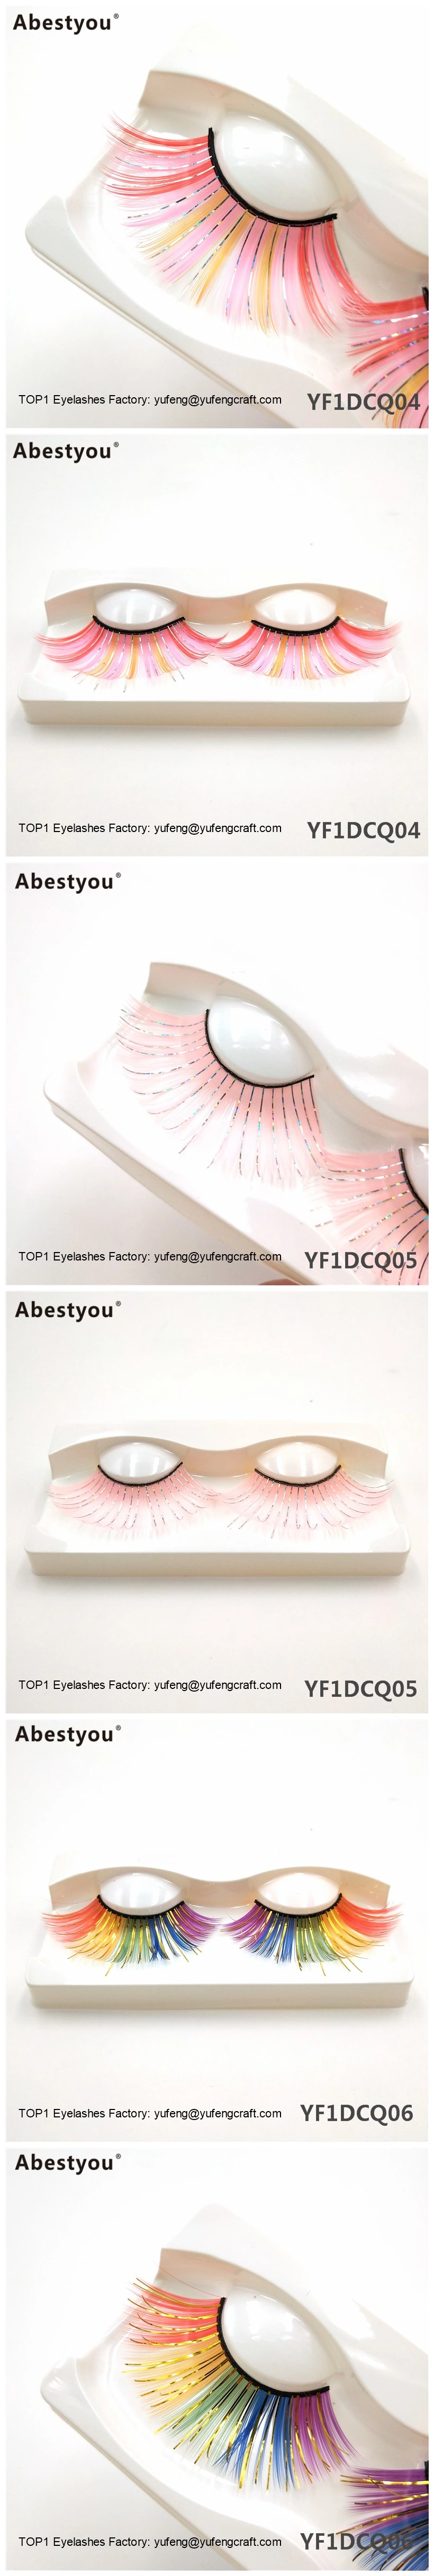 Abestyou Cruelty Free Vegan Faux Mink Eyelashes 3D Colorful Eyelashes